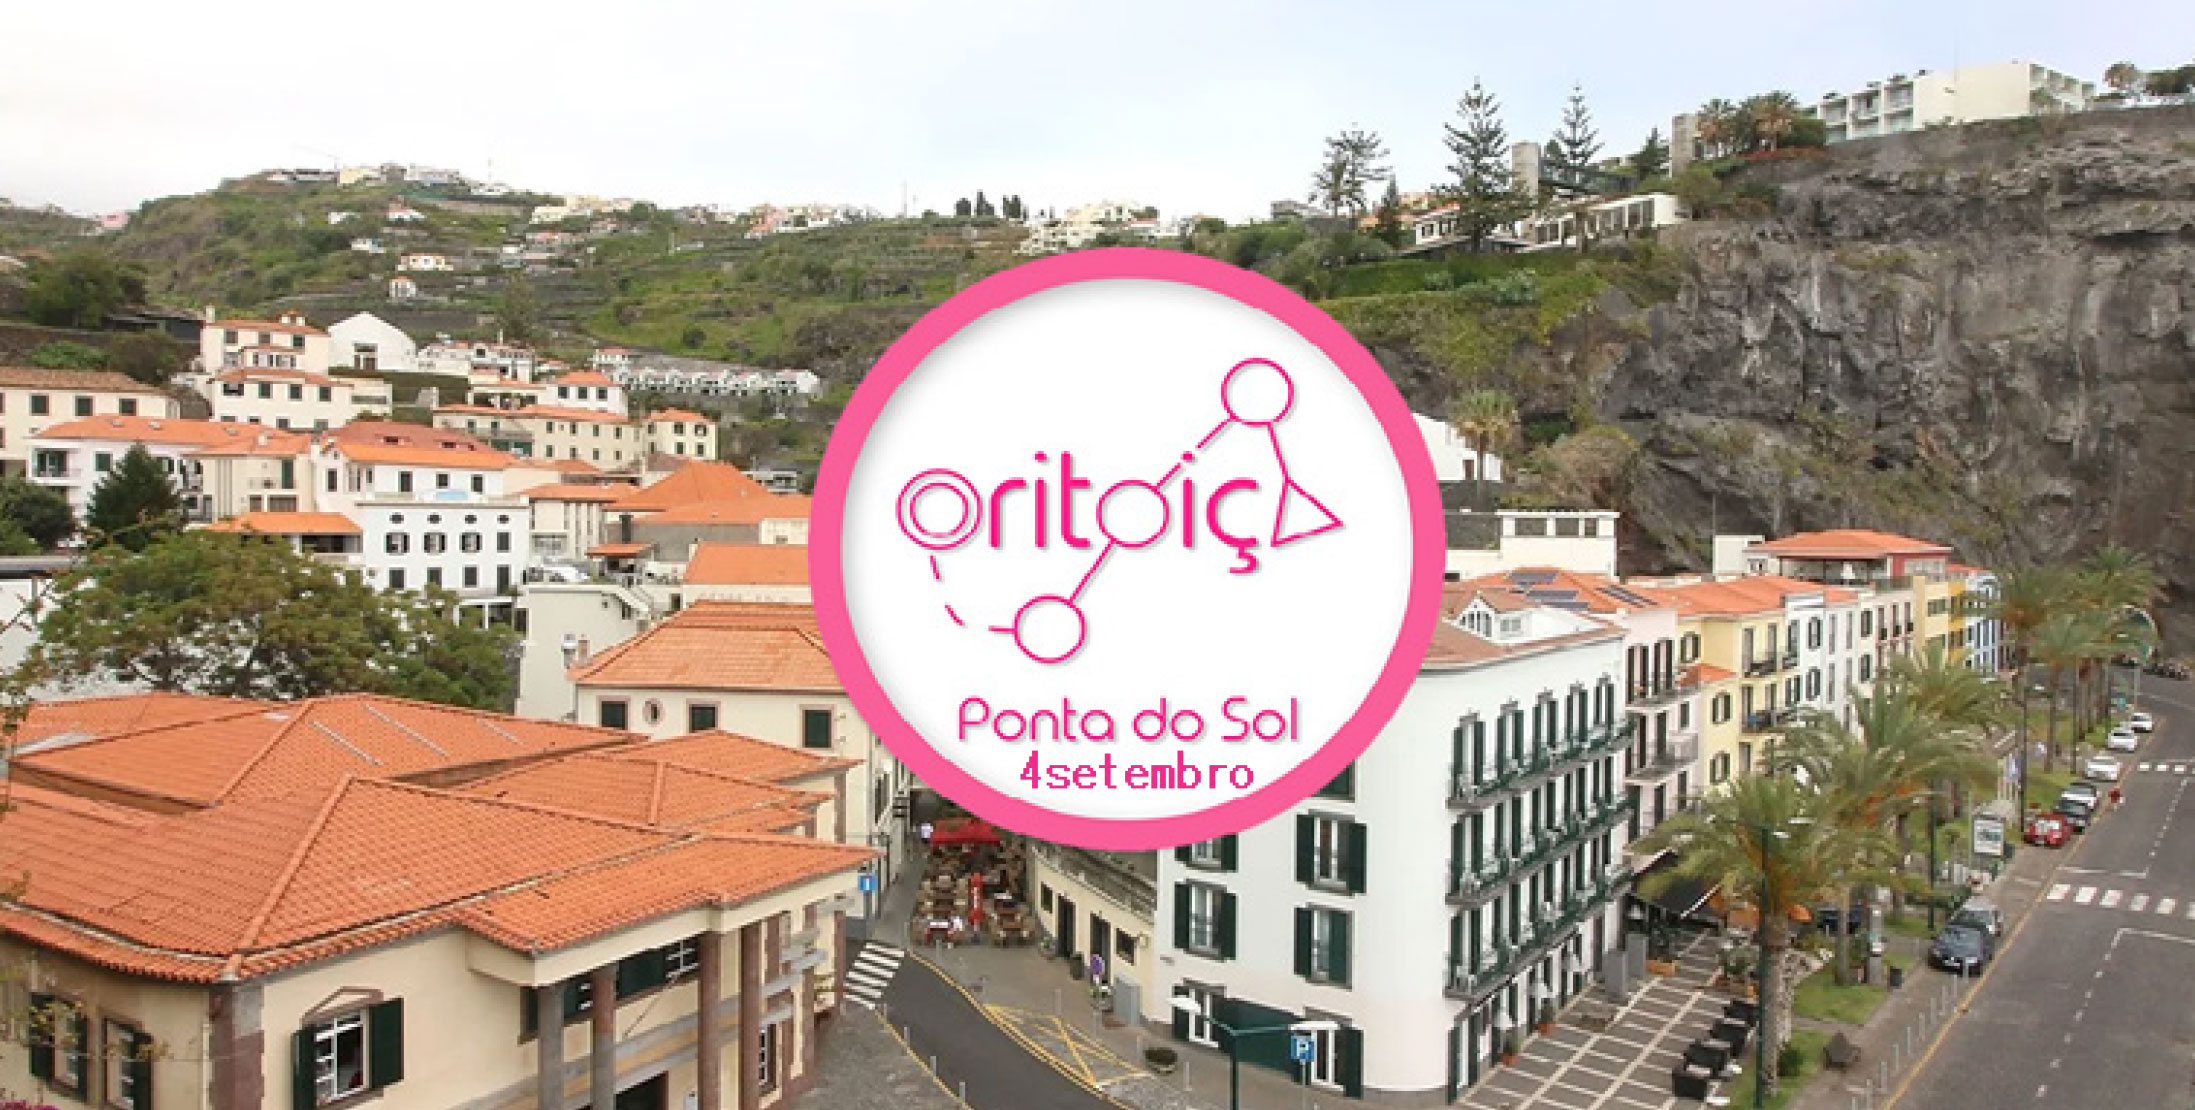 Orientacao_Ponta_do_Sol